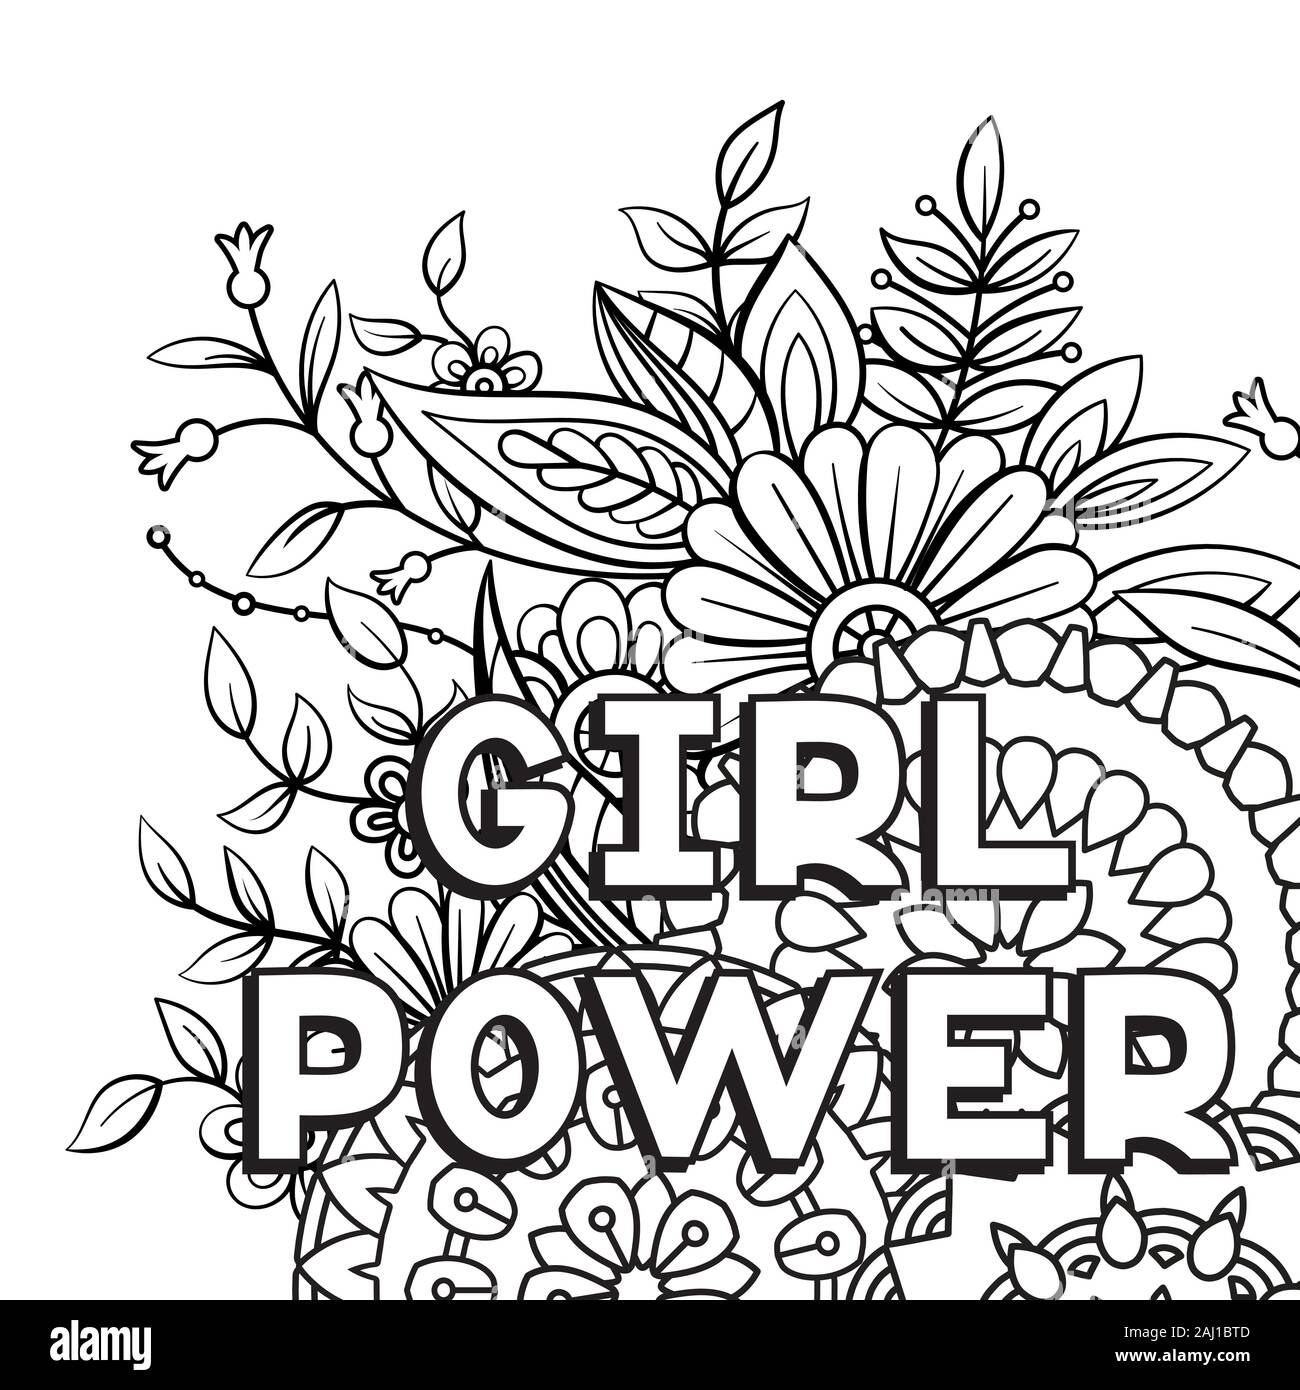 Girl Power De Phrase Citation Le Feminisme Et De Motivation Femme Slogan Isole Sur Fond Blanc Vector Illustration Noir Et Blanc Parfait Pour Coloriage Image Vectorielle Stock Alamy